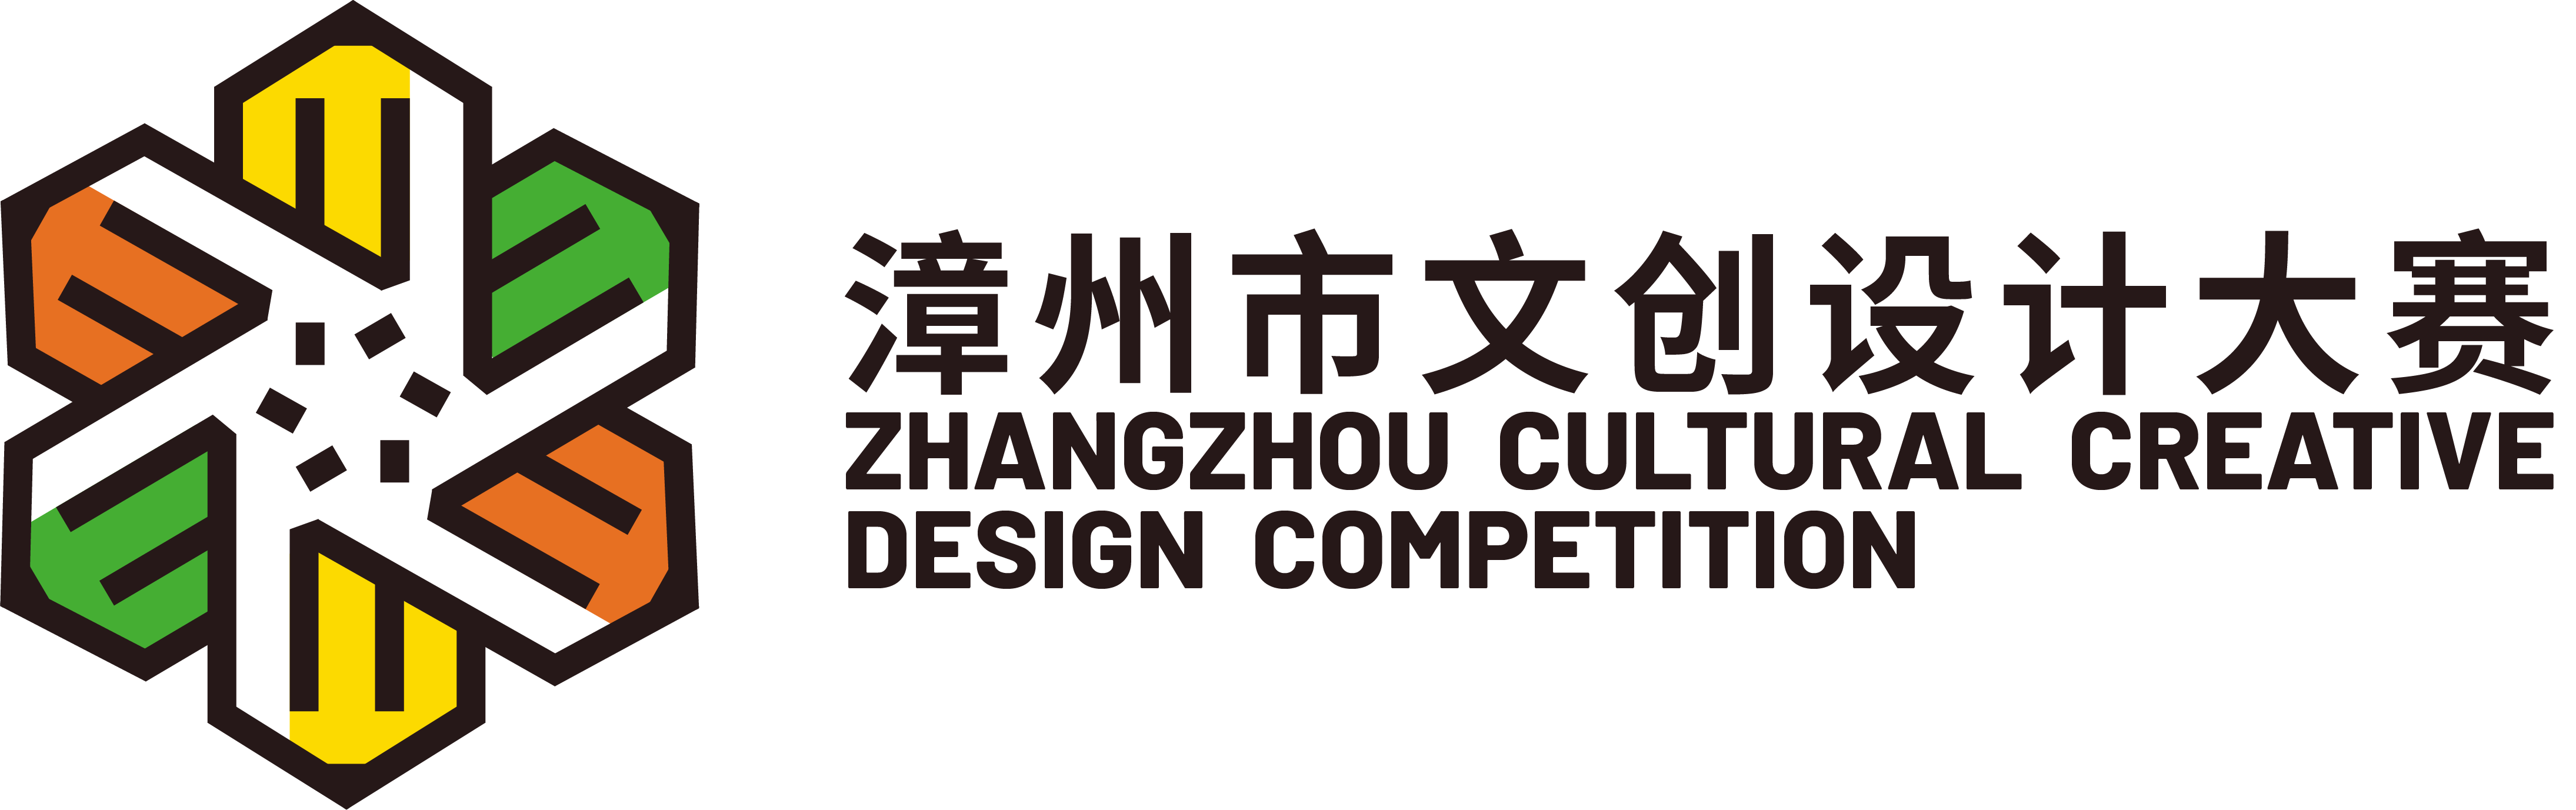 第四届漳州市文创设计大赛